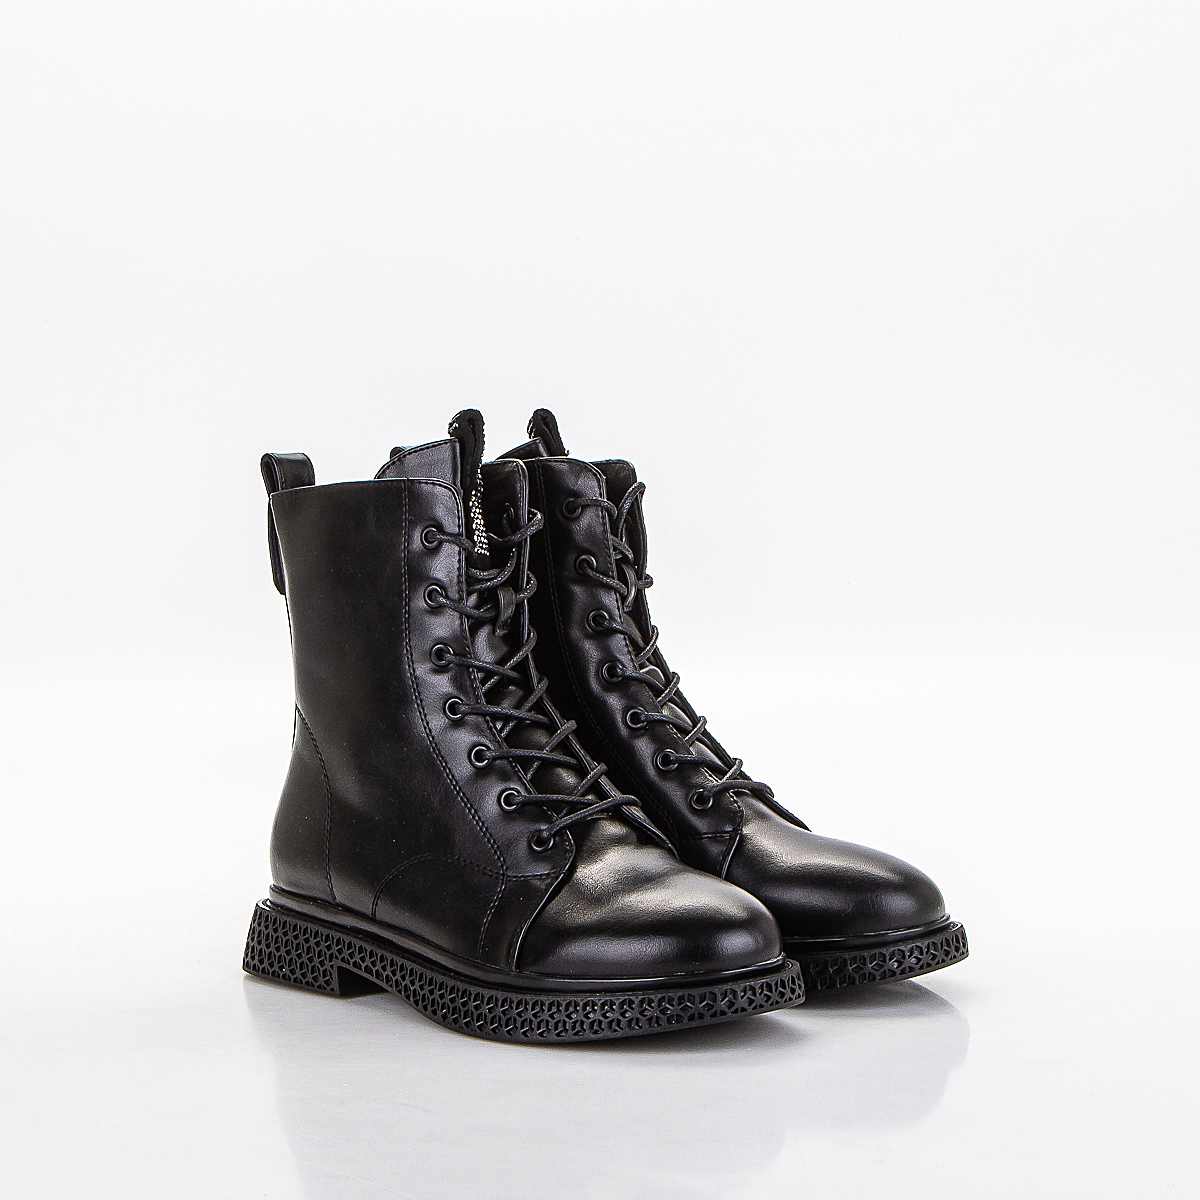 Фото Ботинки женские P305 black купить на lauf.shoes